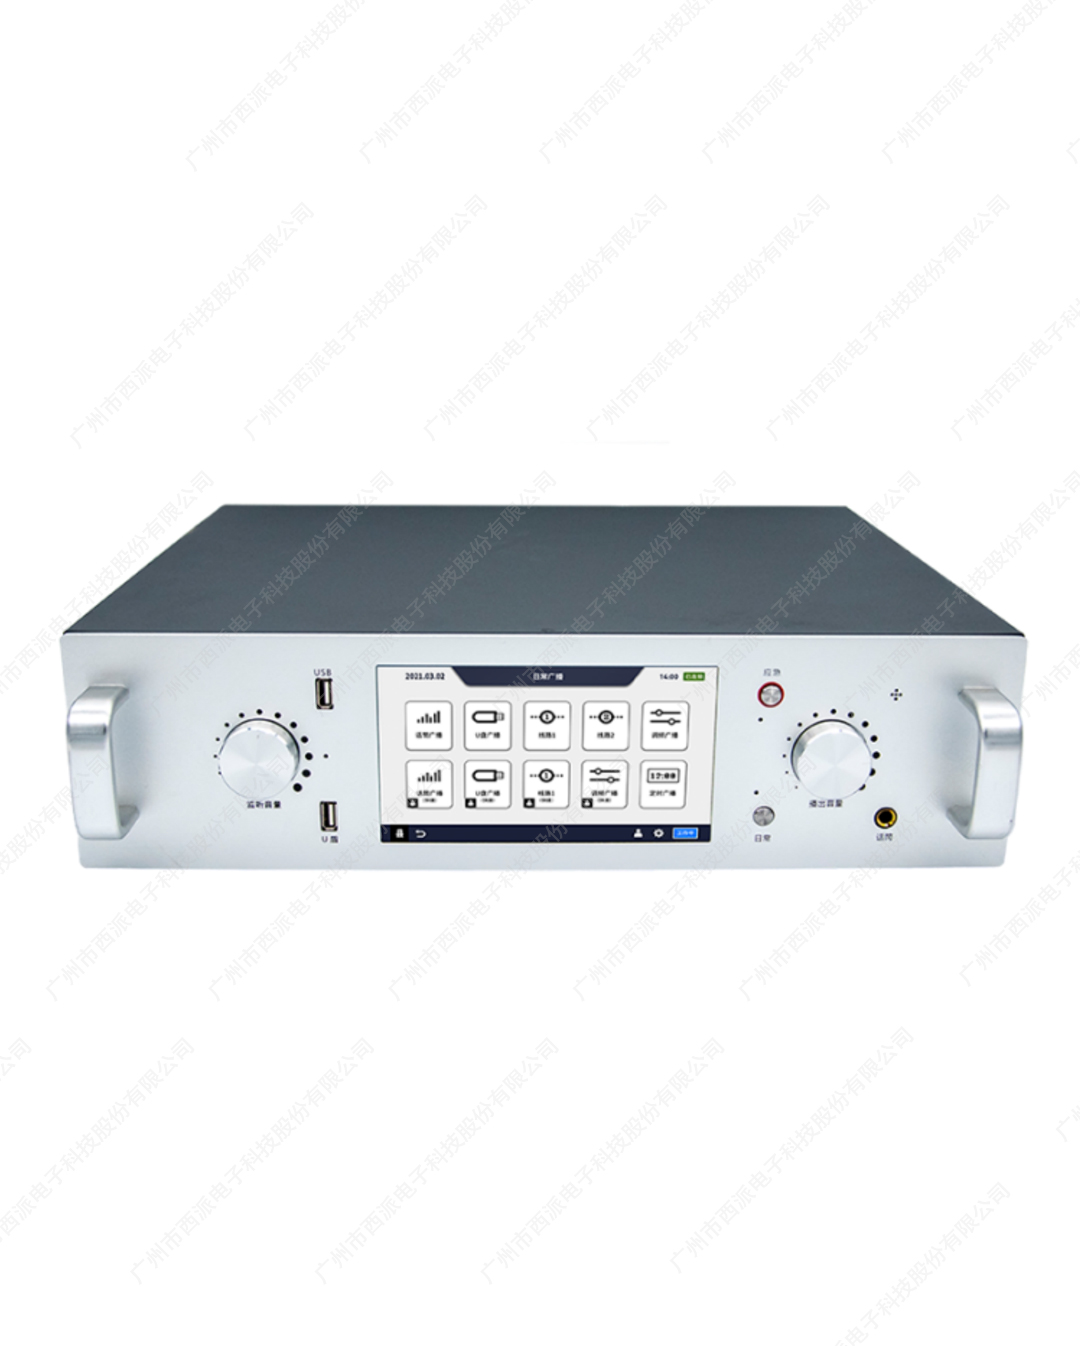 中山CE-NB4005县级/地面数字/调频/应急广播适配器